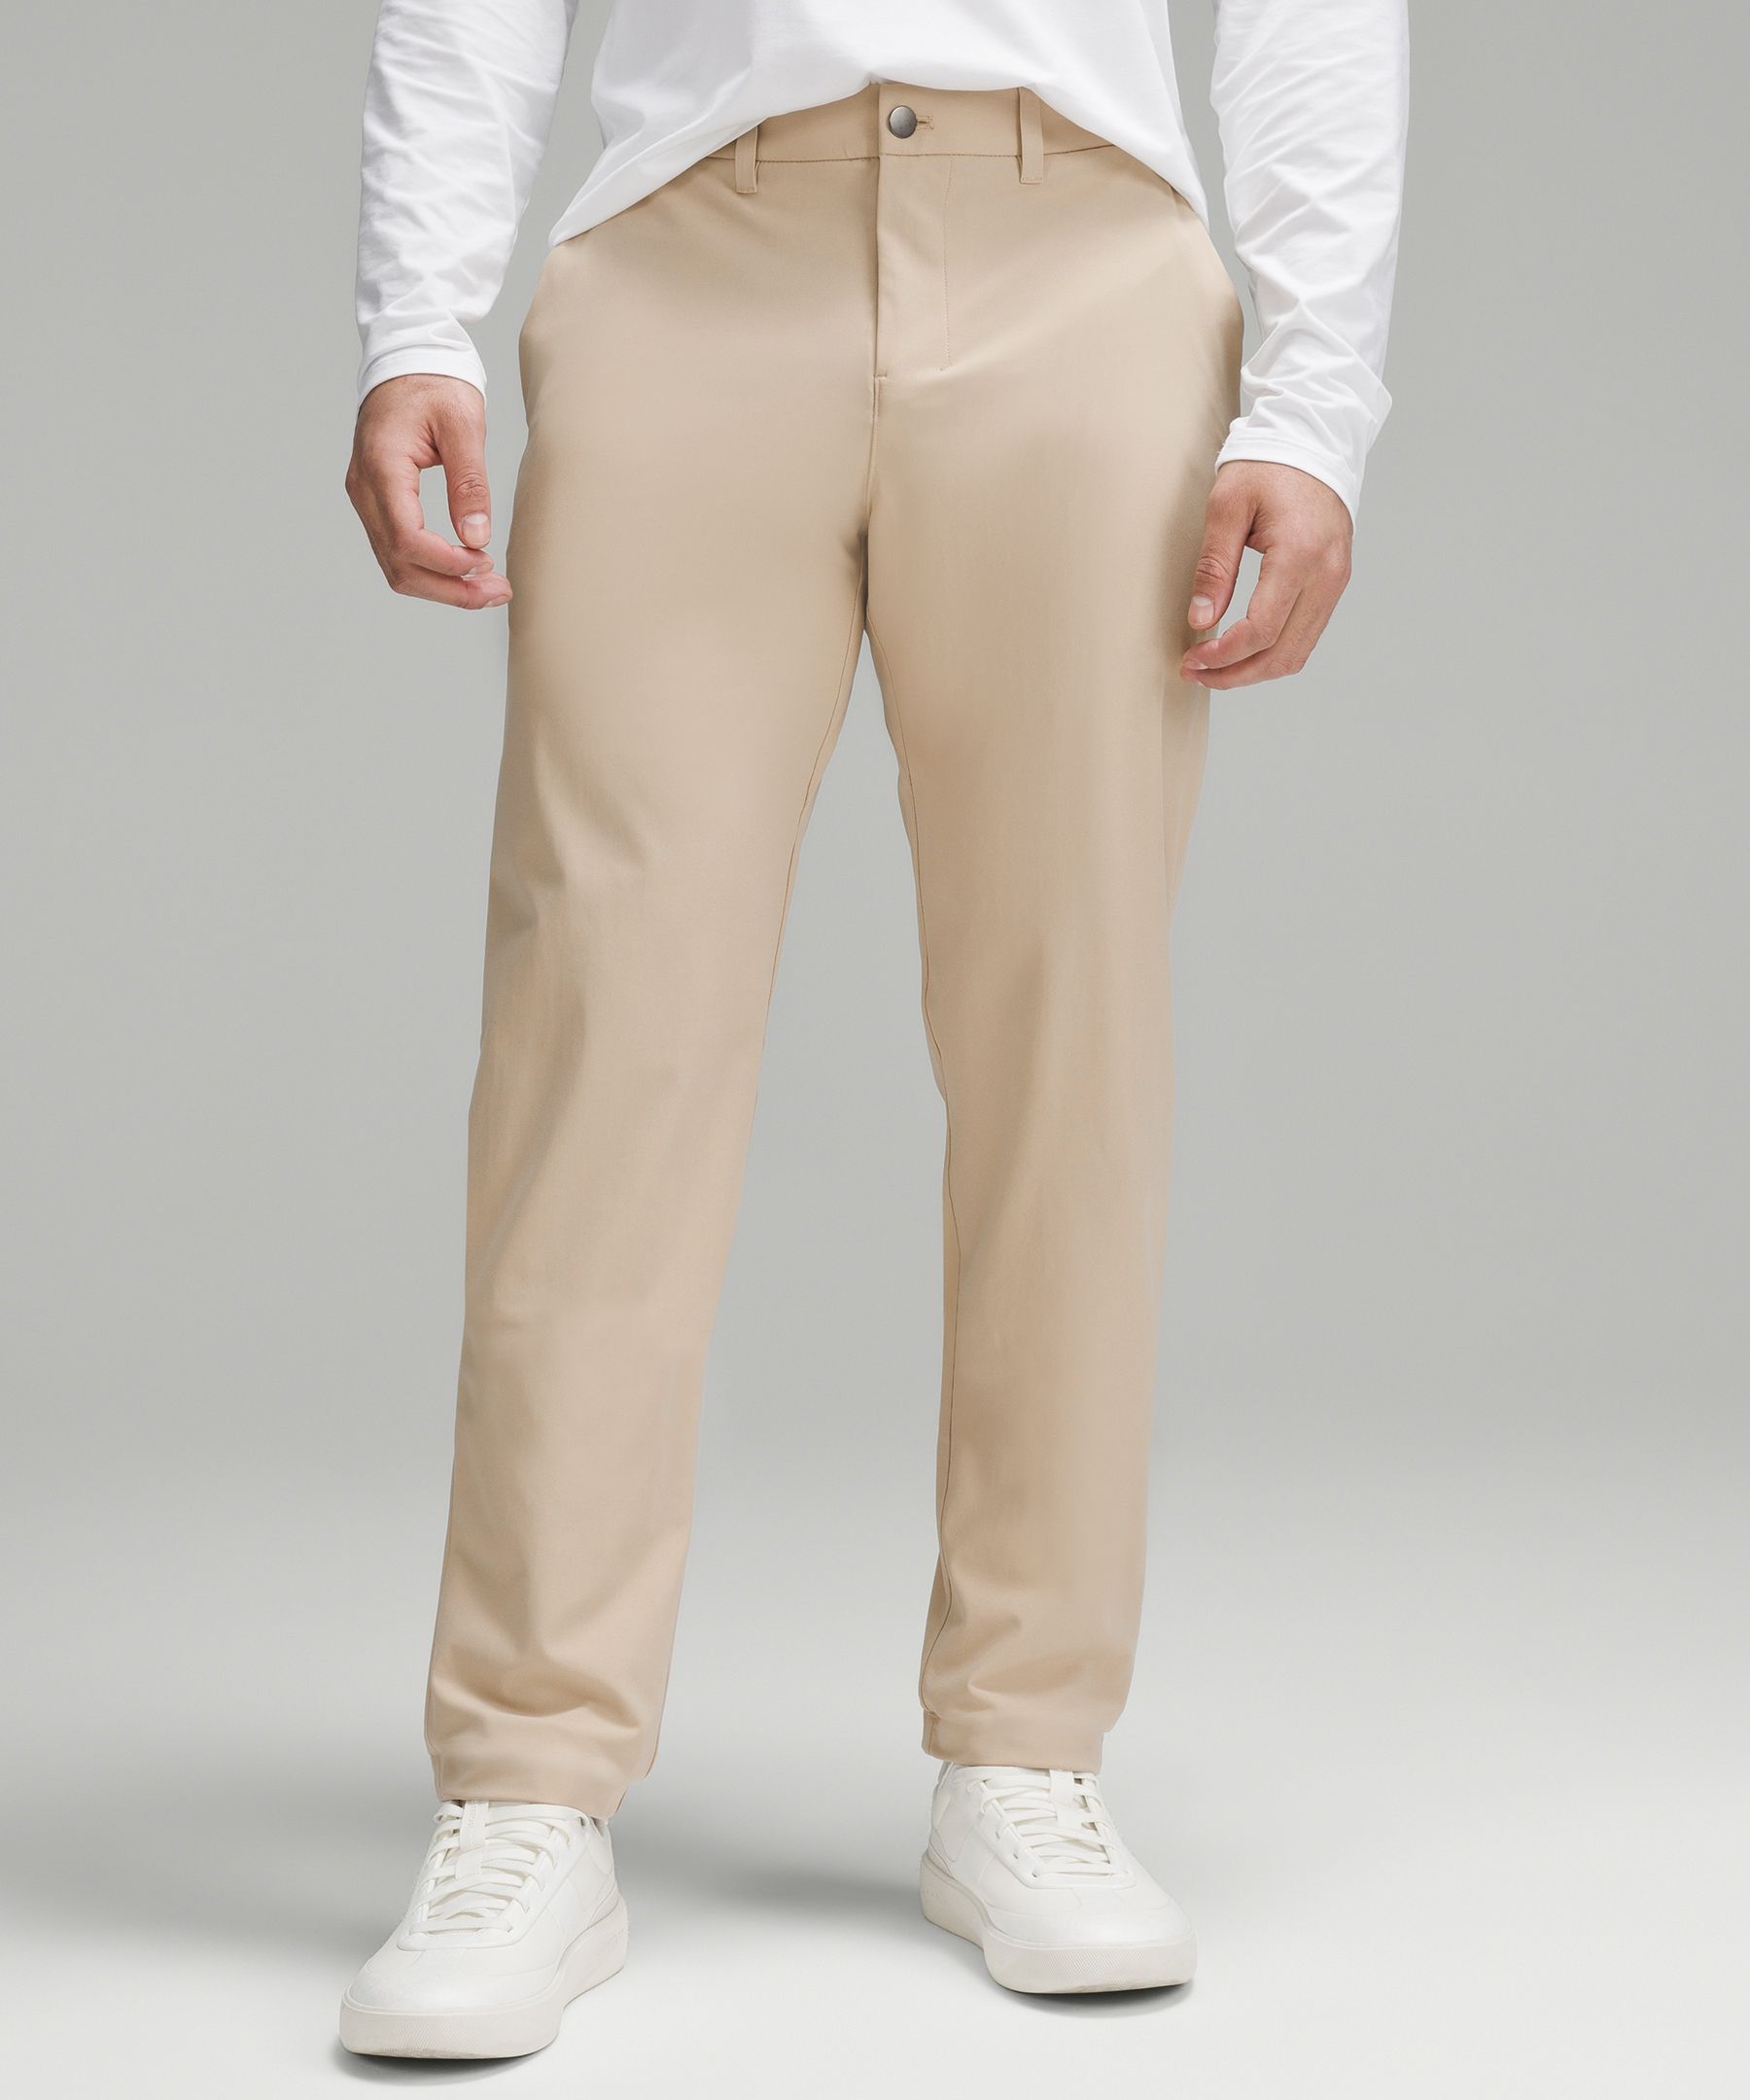 Lululemon Abc Classic-fit Trousers 28"l Warpstreme